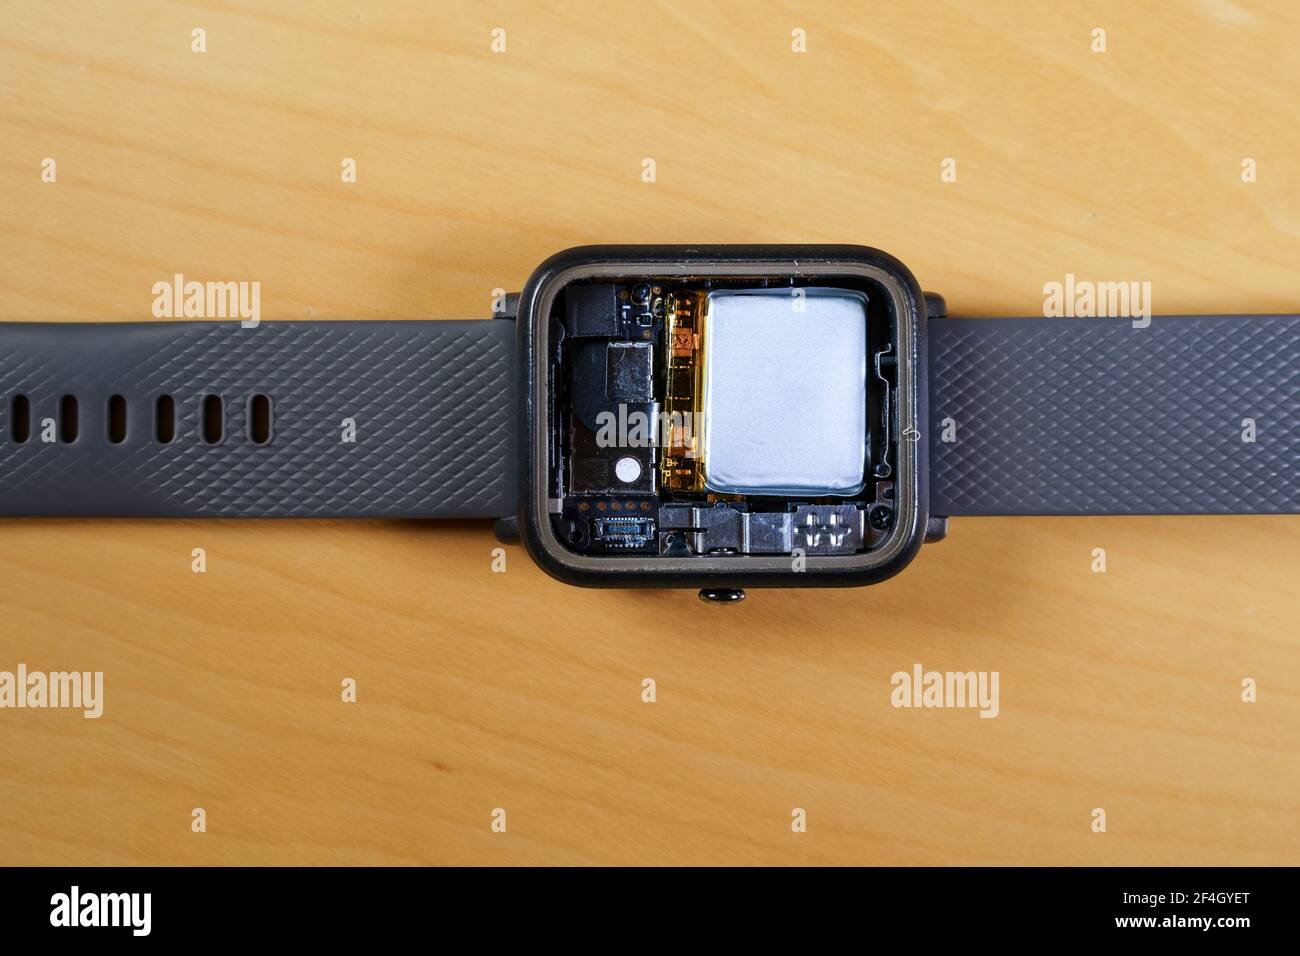 Smartwatch smontato che mostra l'interno, la batteria, i diversi sensori e la CPU. Foto Stock